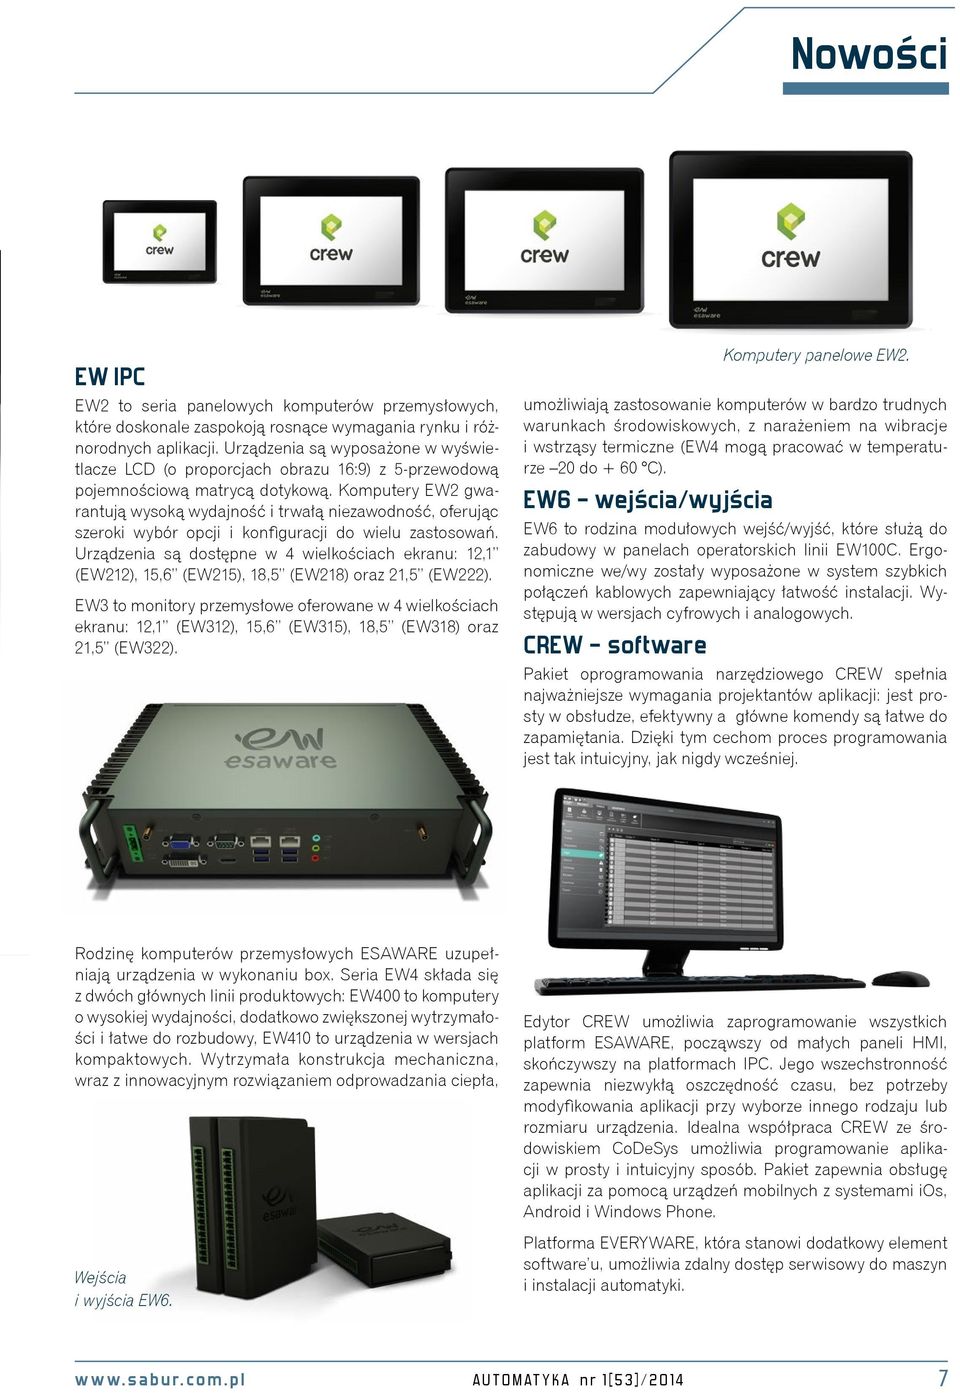 Komputery EW2 gwarantują wysoką wydajność i trwałą niezawodność, oferując szeroki wybór opcji i konfiguracji do wielu zastosowań.